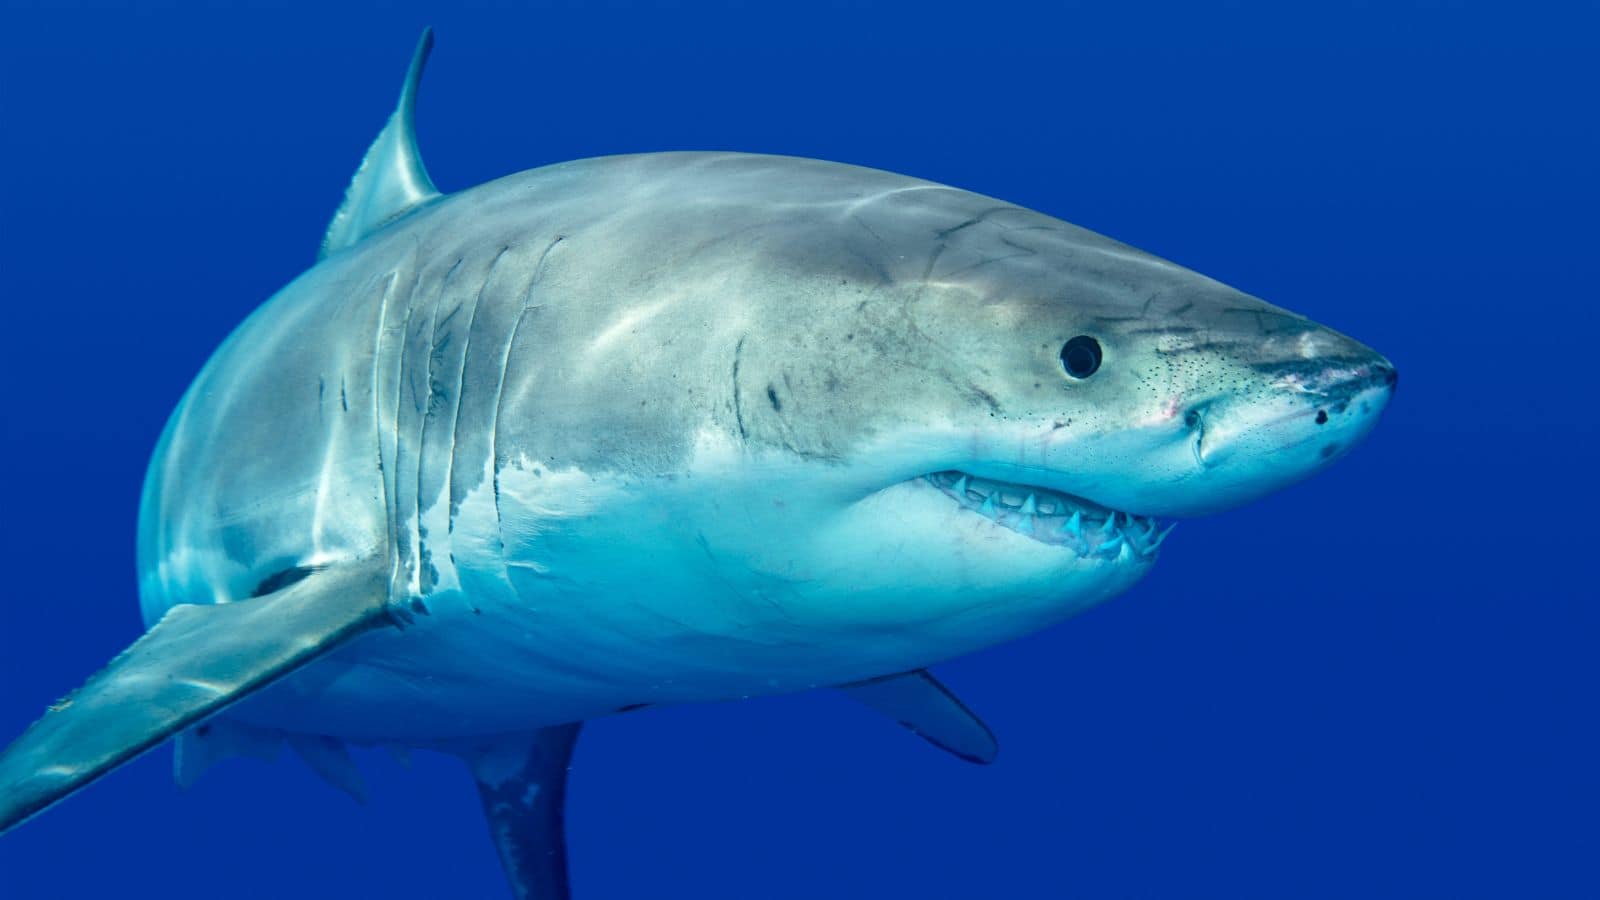 Se vi fa paura uno squalo sappiate che state sbagliando minaccia!